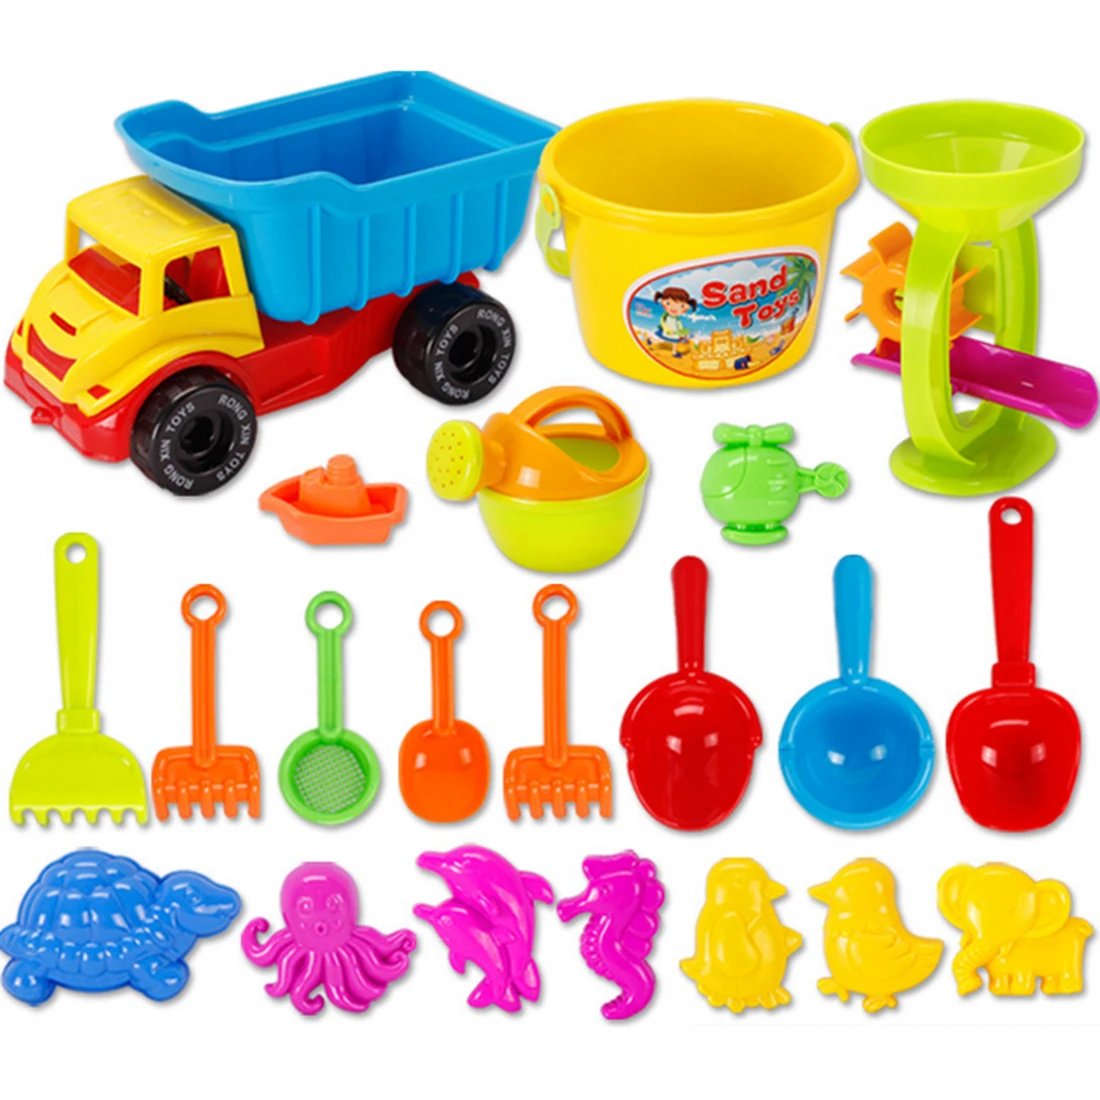 21 шт. открытый игрушки для детей пляжный песок игрушки комплект с сетка сумка для детей-Цвет случайный